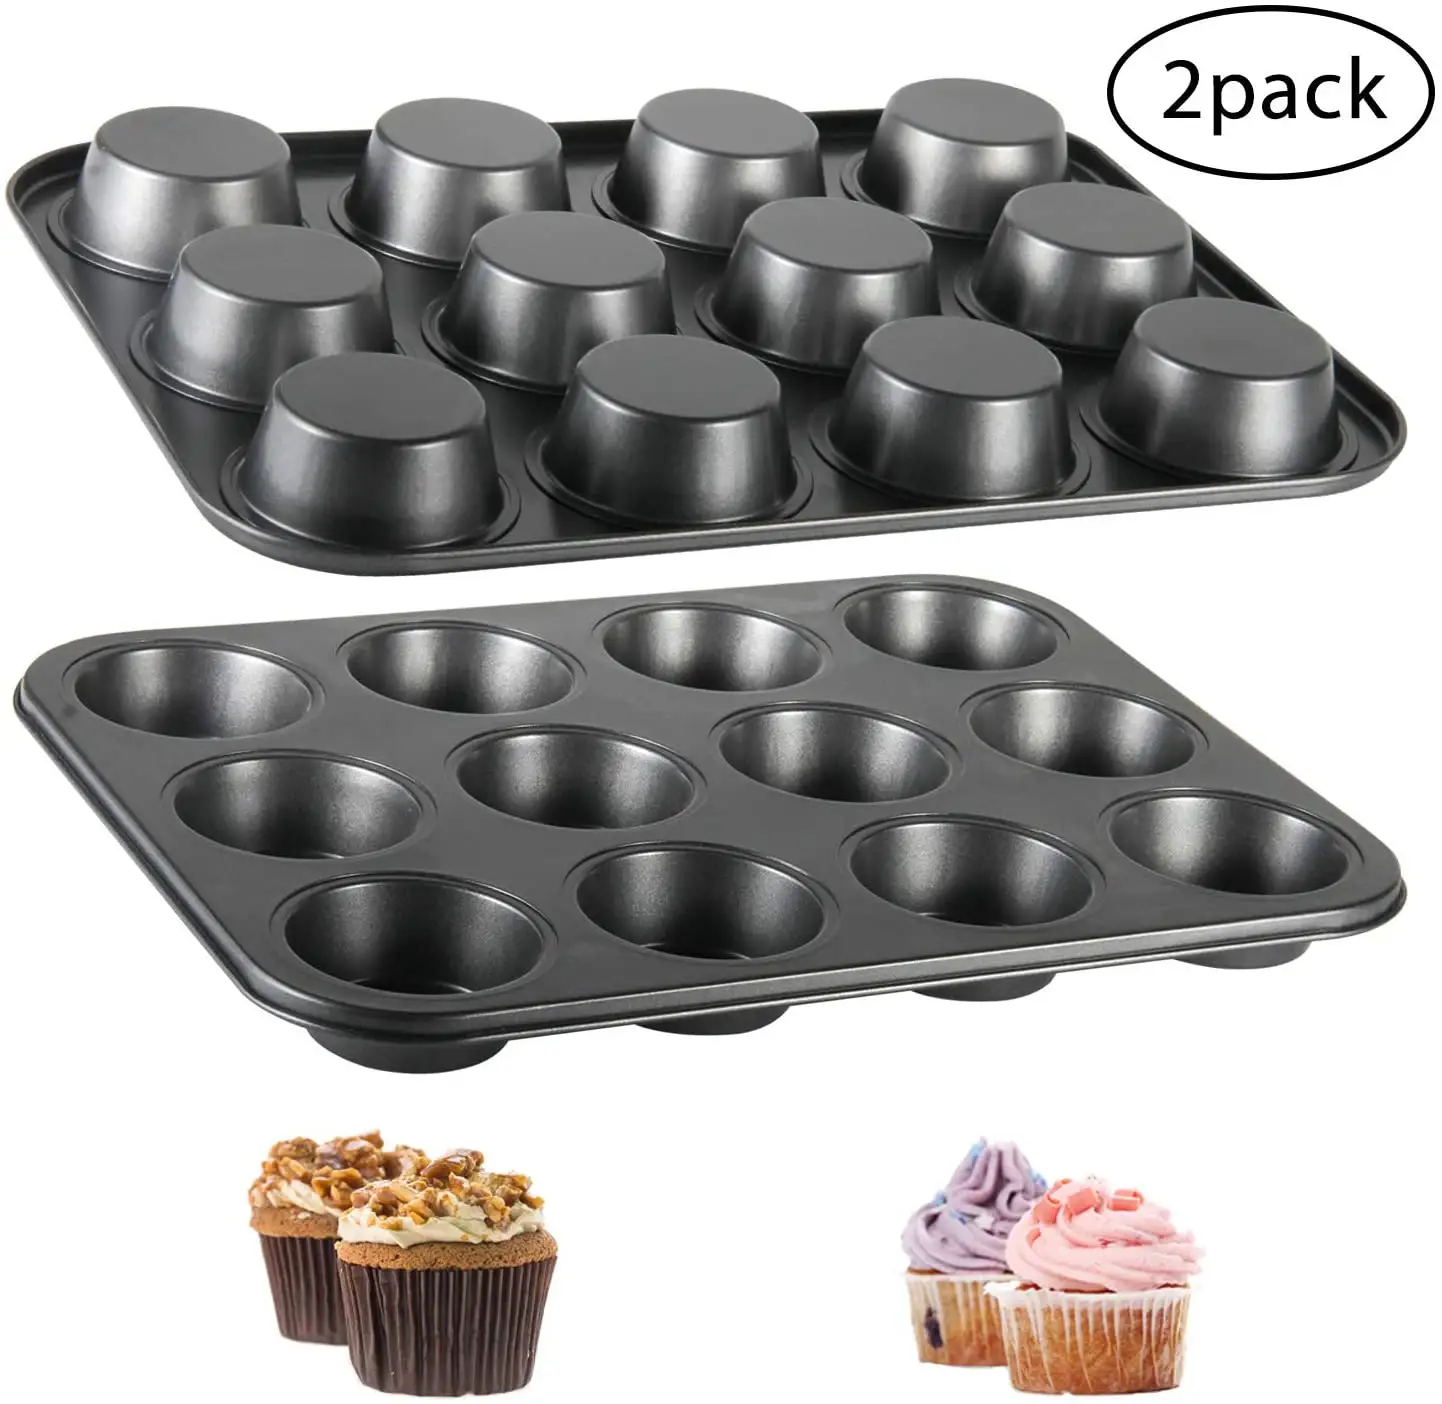 Cetakan Kue Muffin 12 Cangkir, Peralatan Dapur Rumah Baja Karbon Hitam Emas Antilengket untuk Memanggang Cupcake